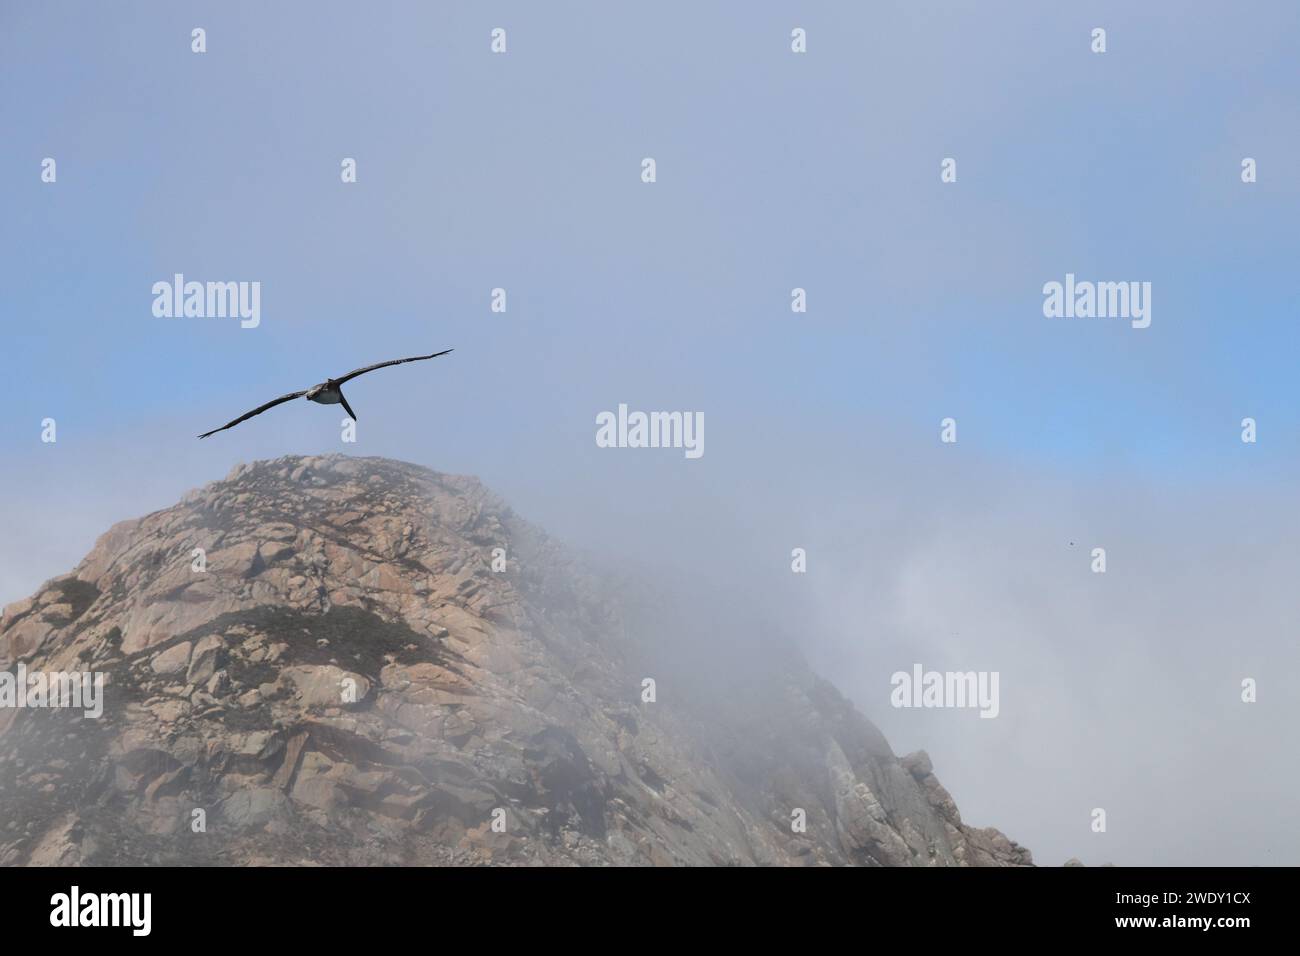 Pelican s'envole près d'une roche obscurcie par le brouillard Banque D'Images